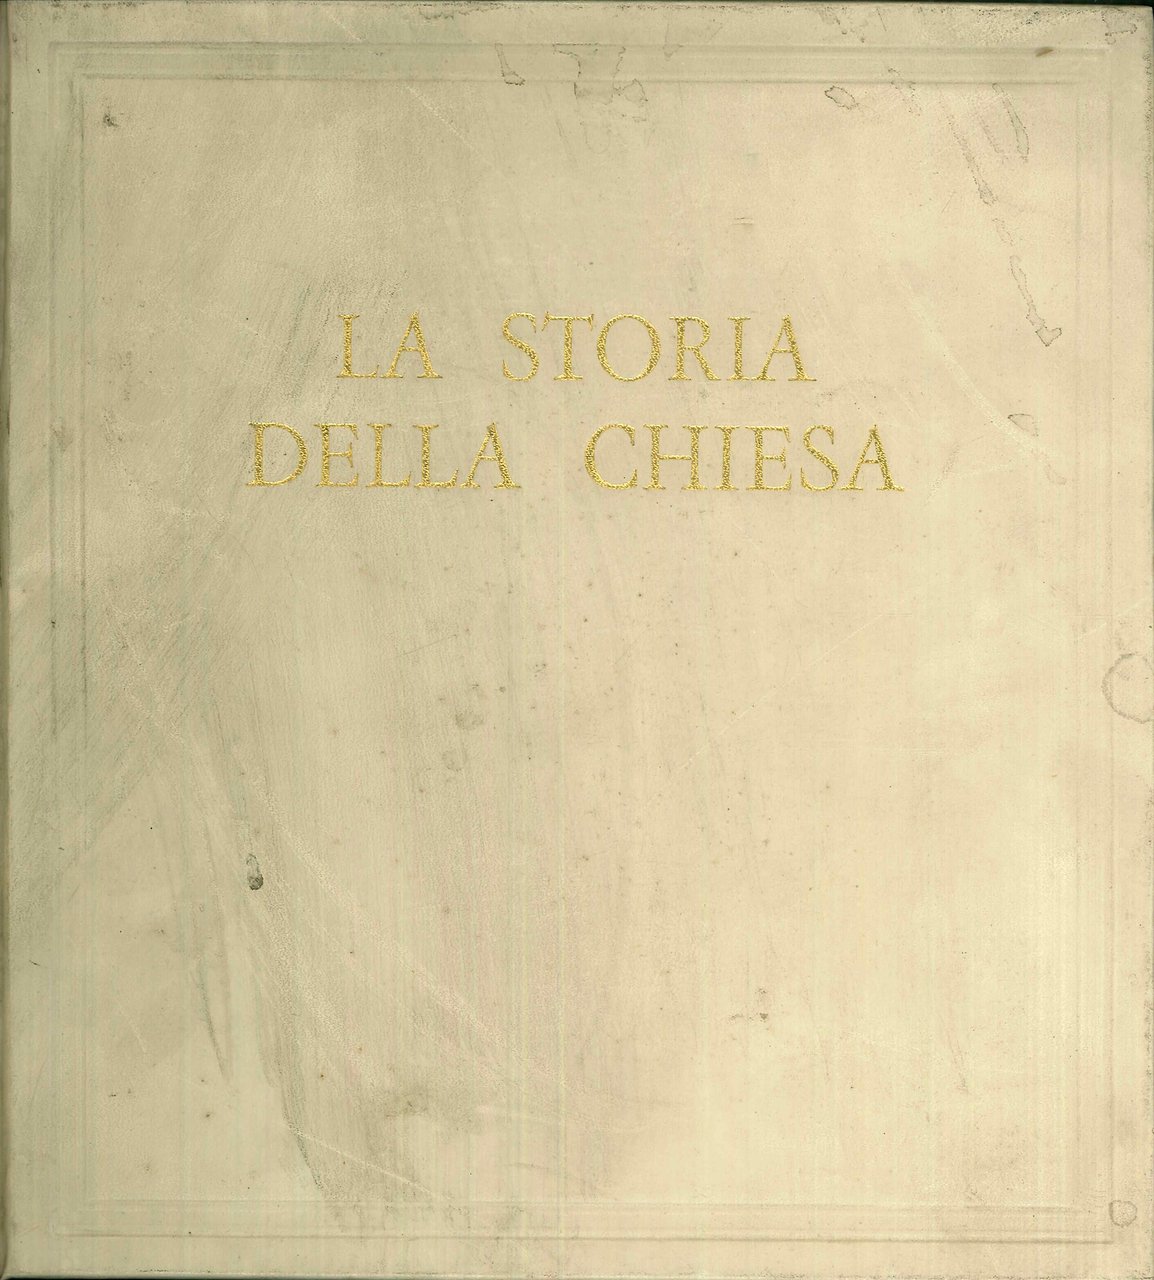 La Storia della Chiesa, Milano, Fratelli Fabbri Editori, 1962